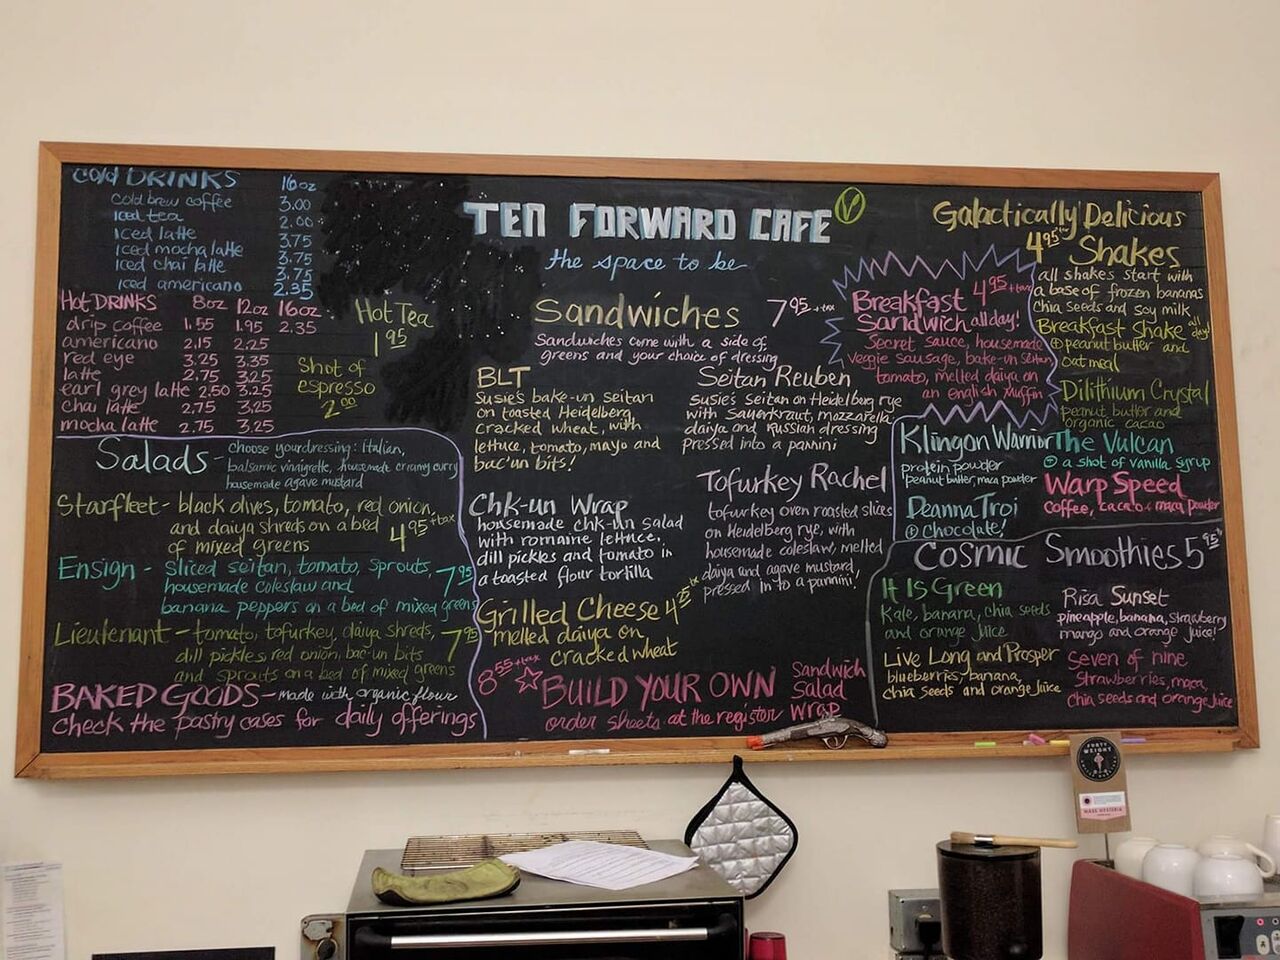 A photo of Ten Forward Café